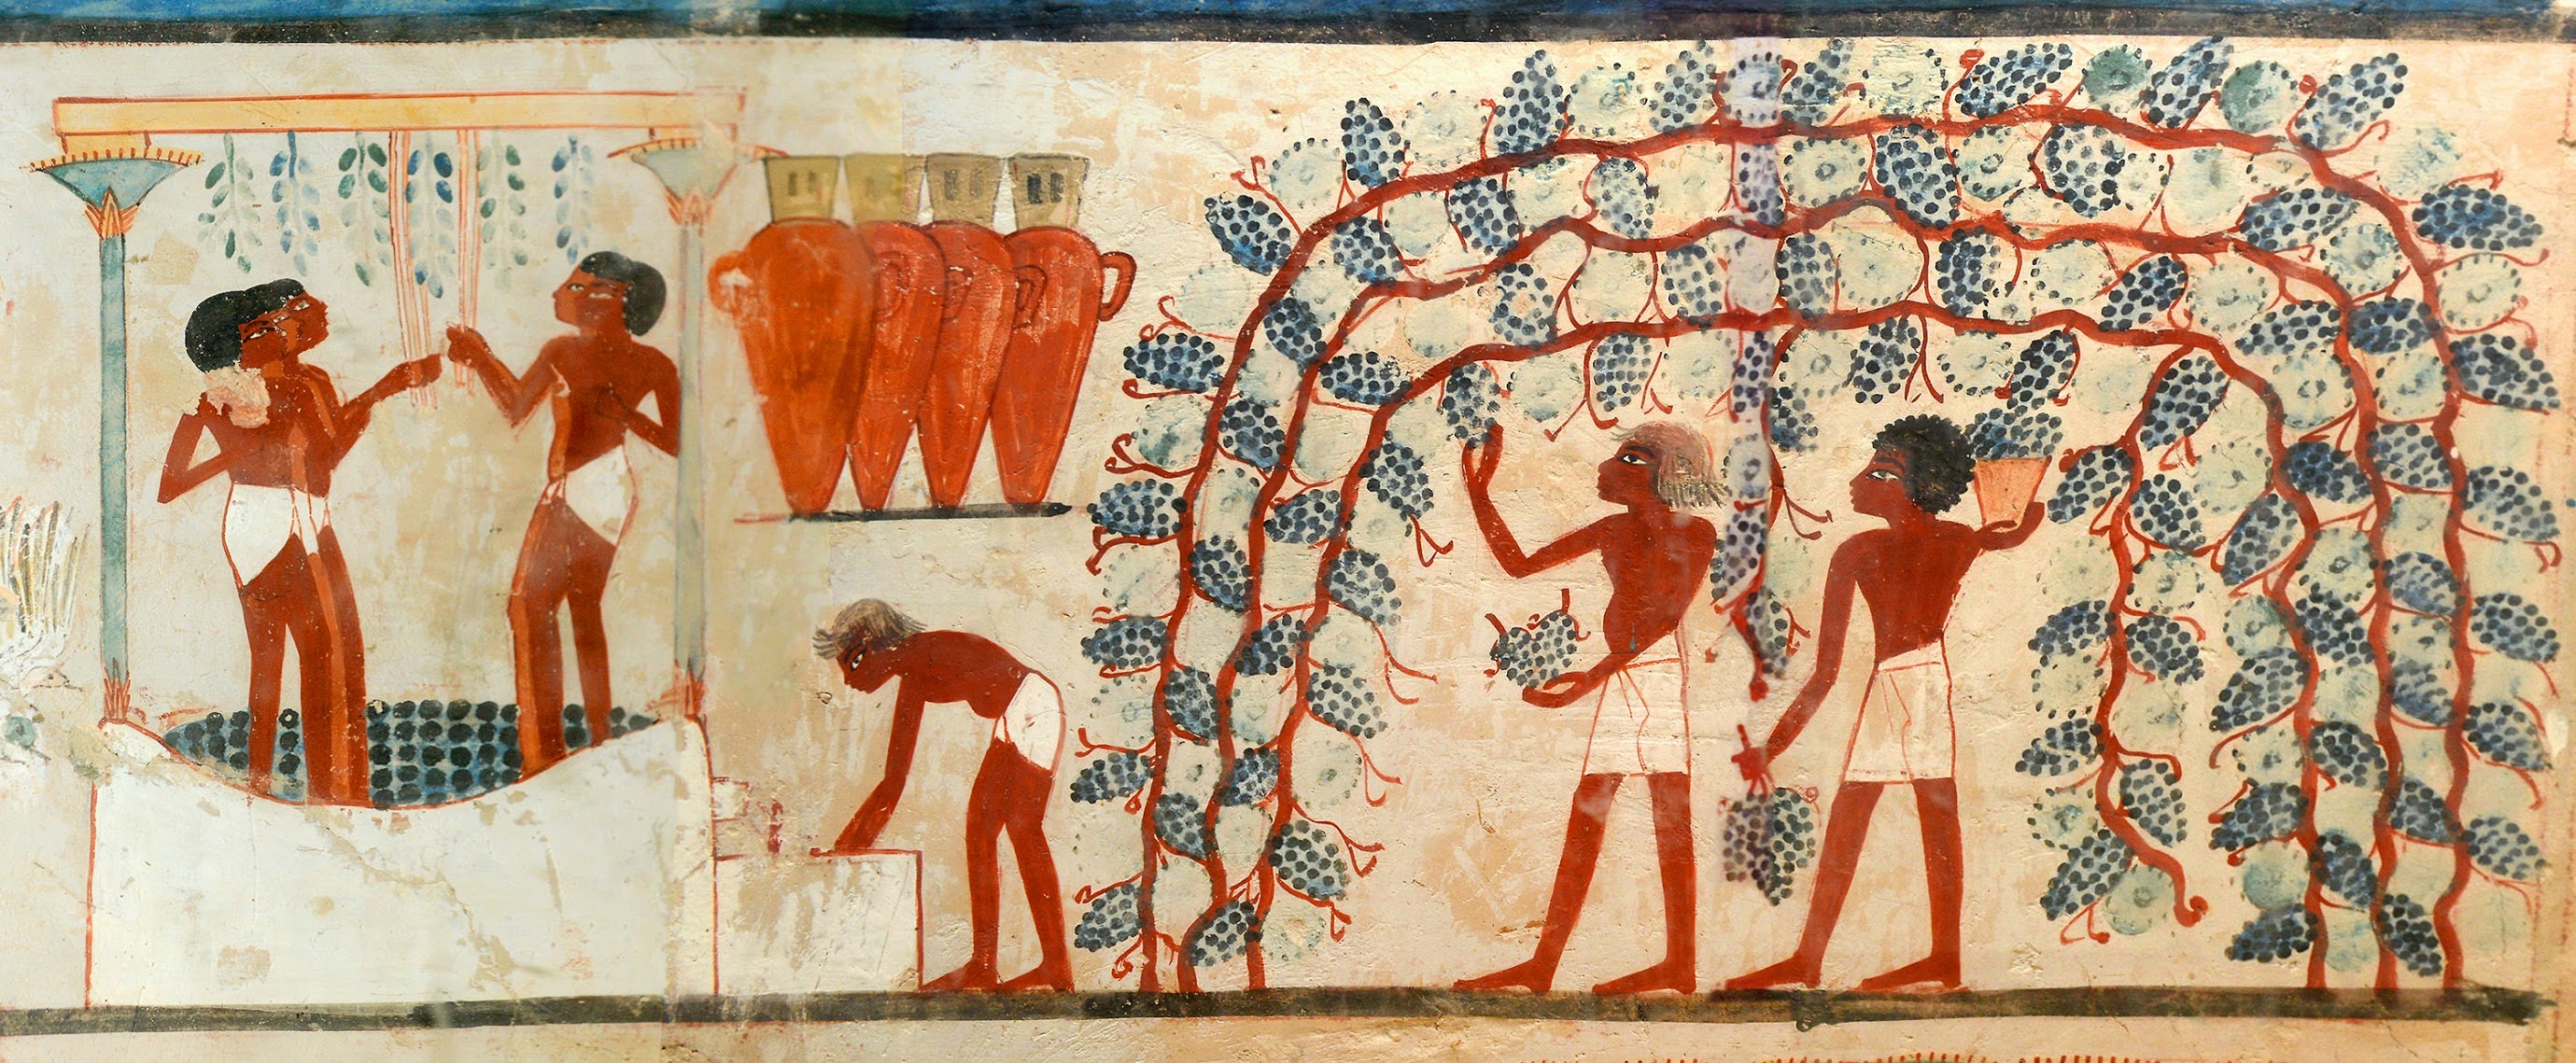 Irep Nefer Il Vino Buono Dell Antico Egitto Il Calice Di Ebe